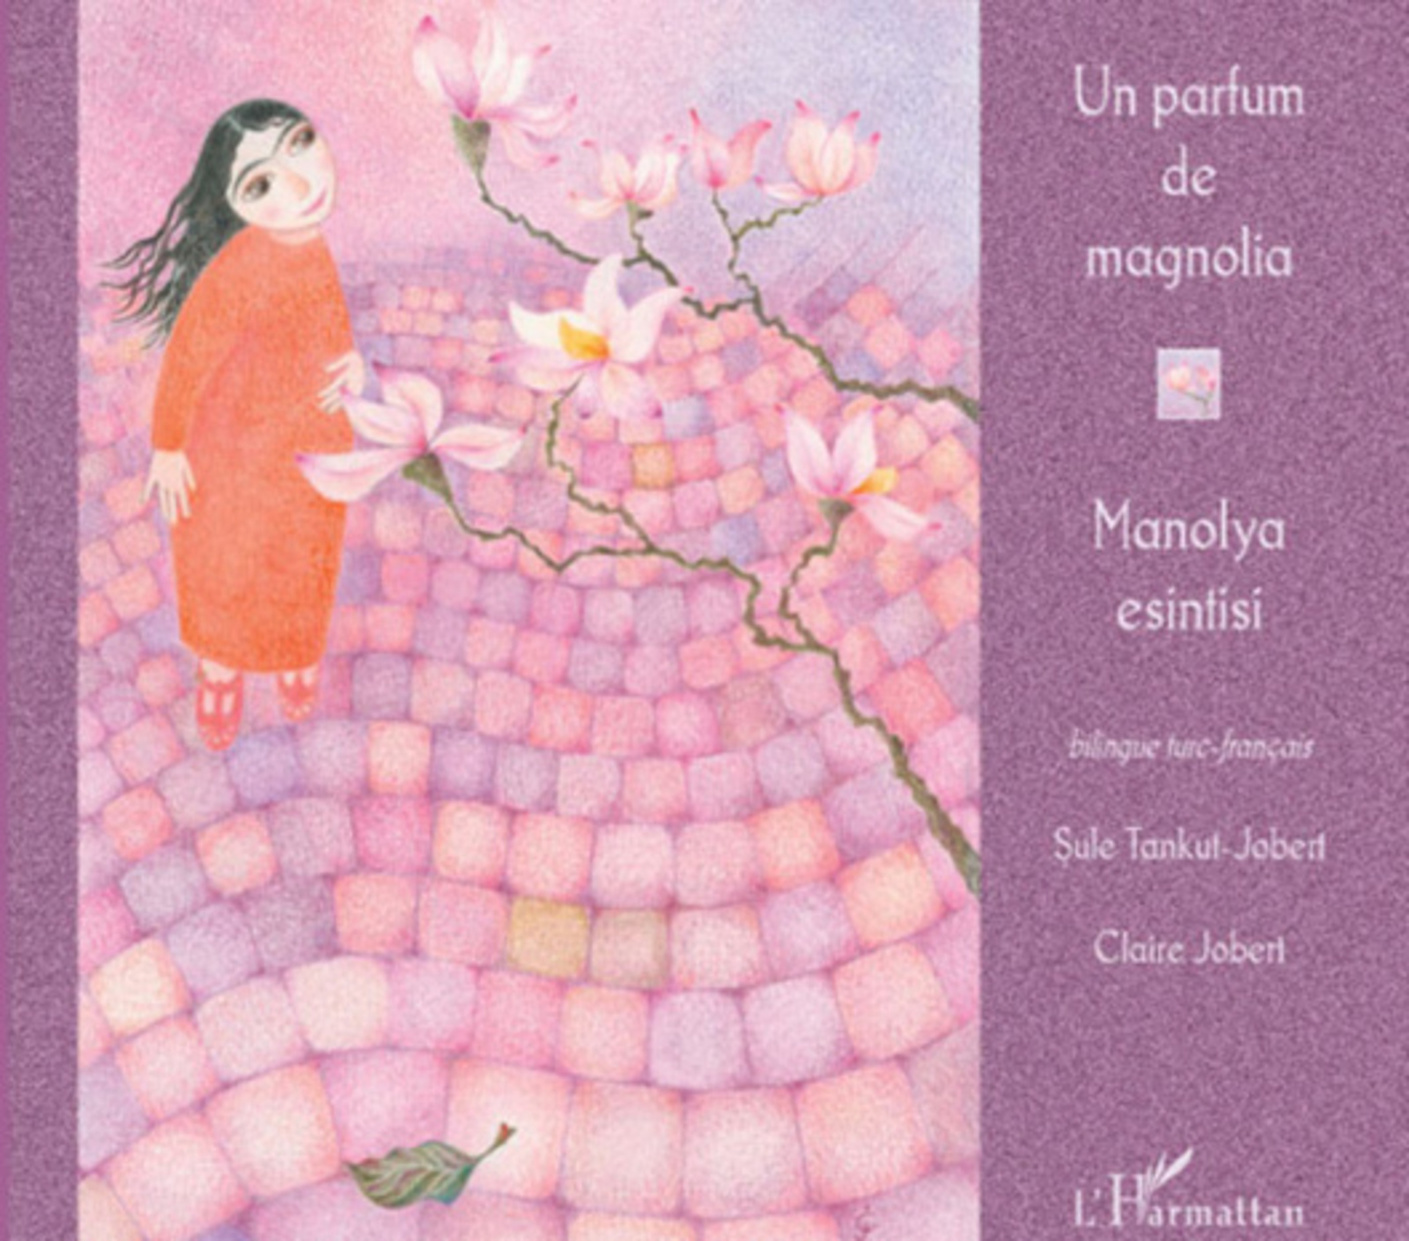 Un parfum de magnolia